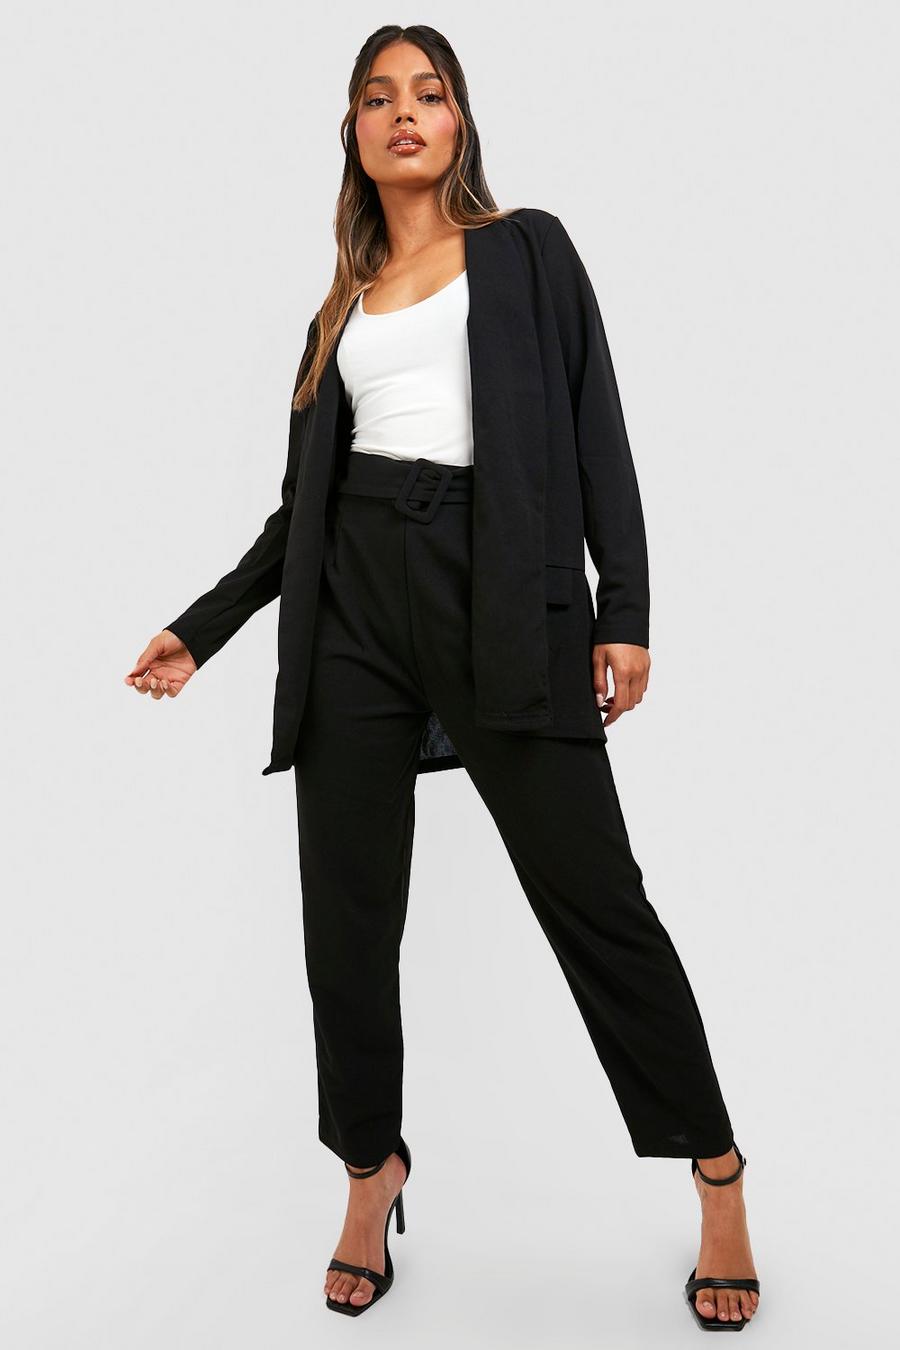 שחור nero סט חליפה בלייזר מחויט ומכנסיים עם חגורה מאותו הבד